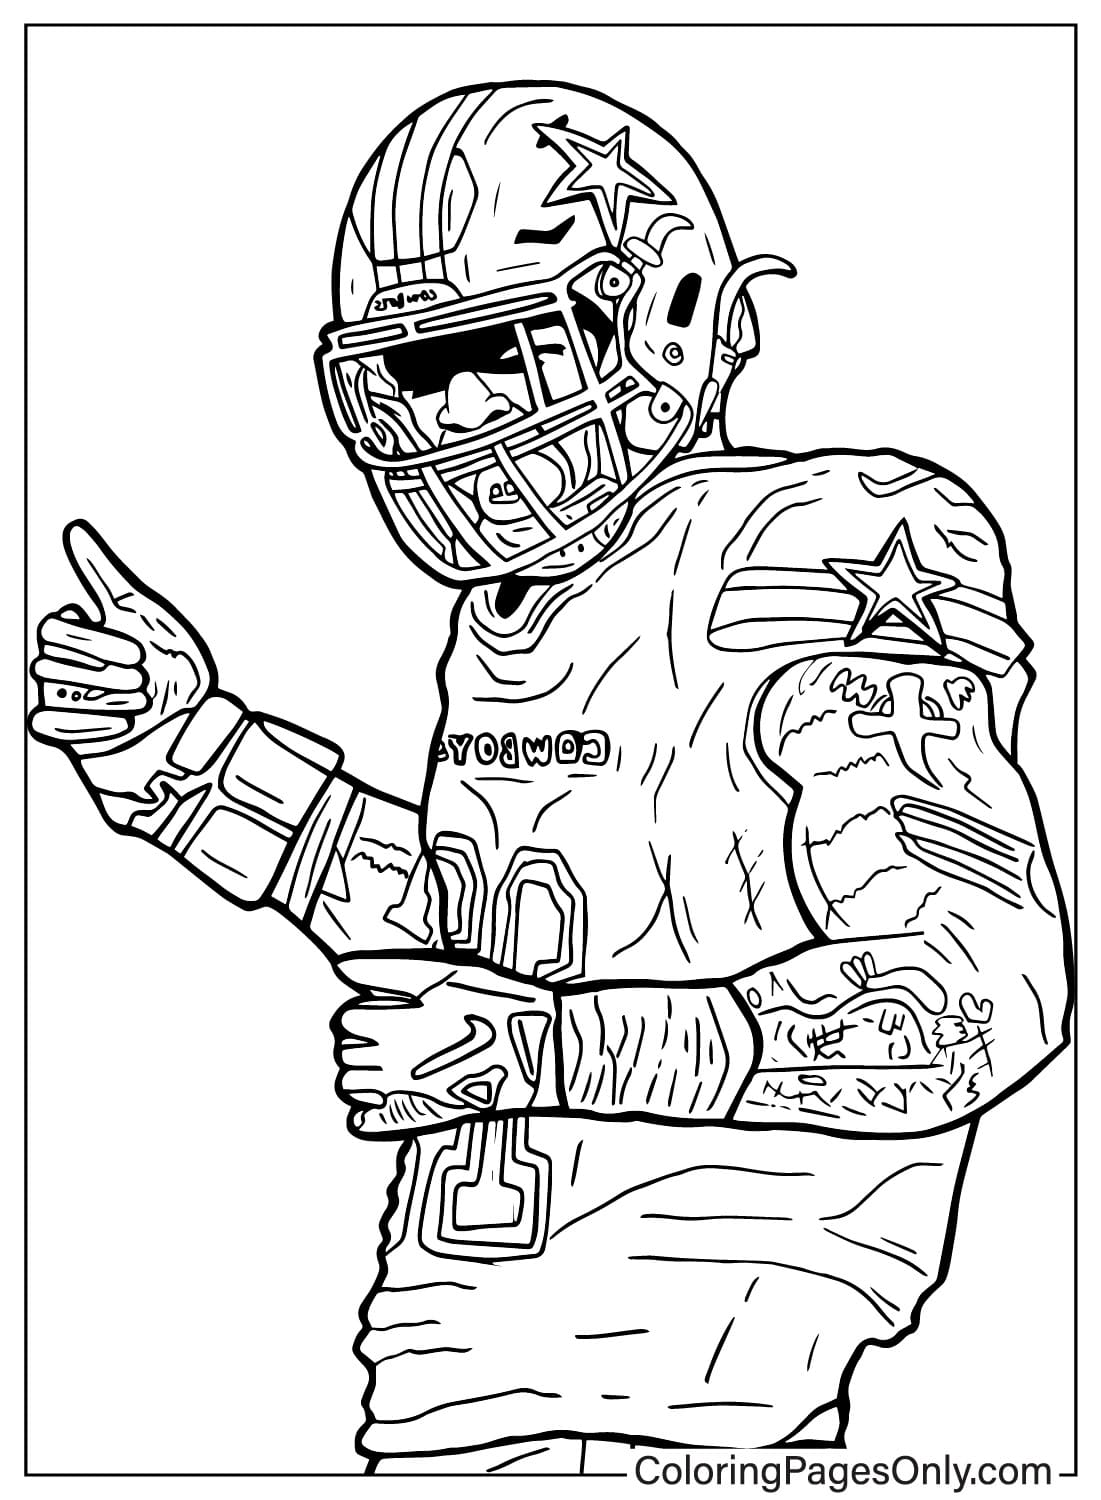 Página para colorir de Micah Parsons grátis do Dallas Cowboys